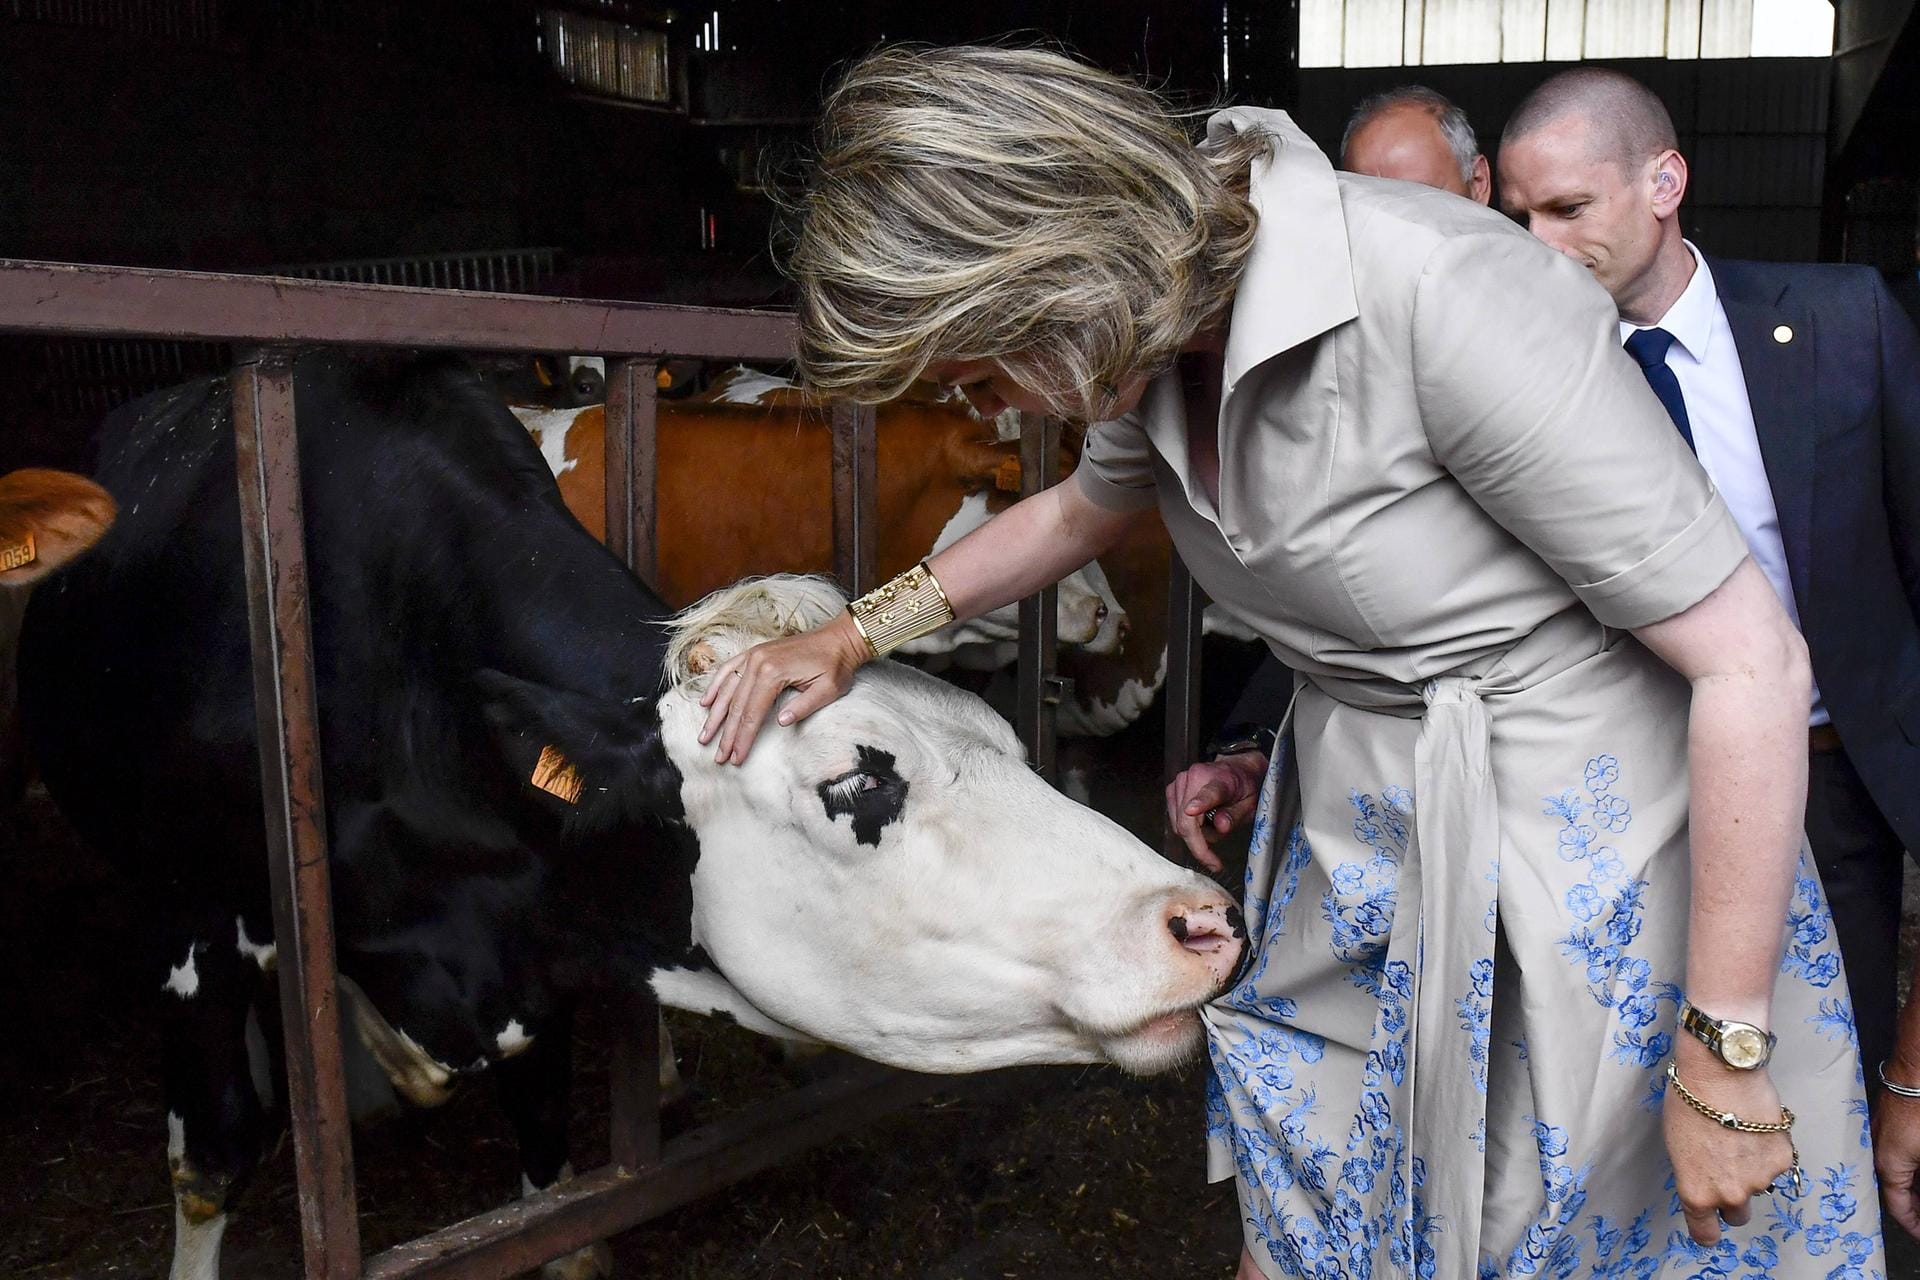 Genau diese Kuh schien Gefallen am Blumenkleid Mathildes gefunden zu haben.